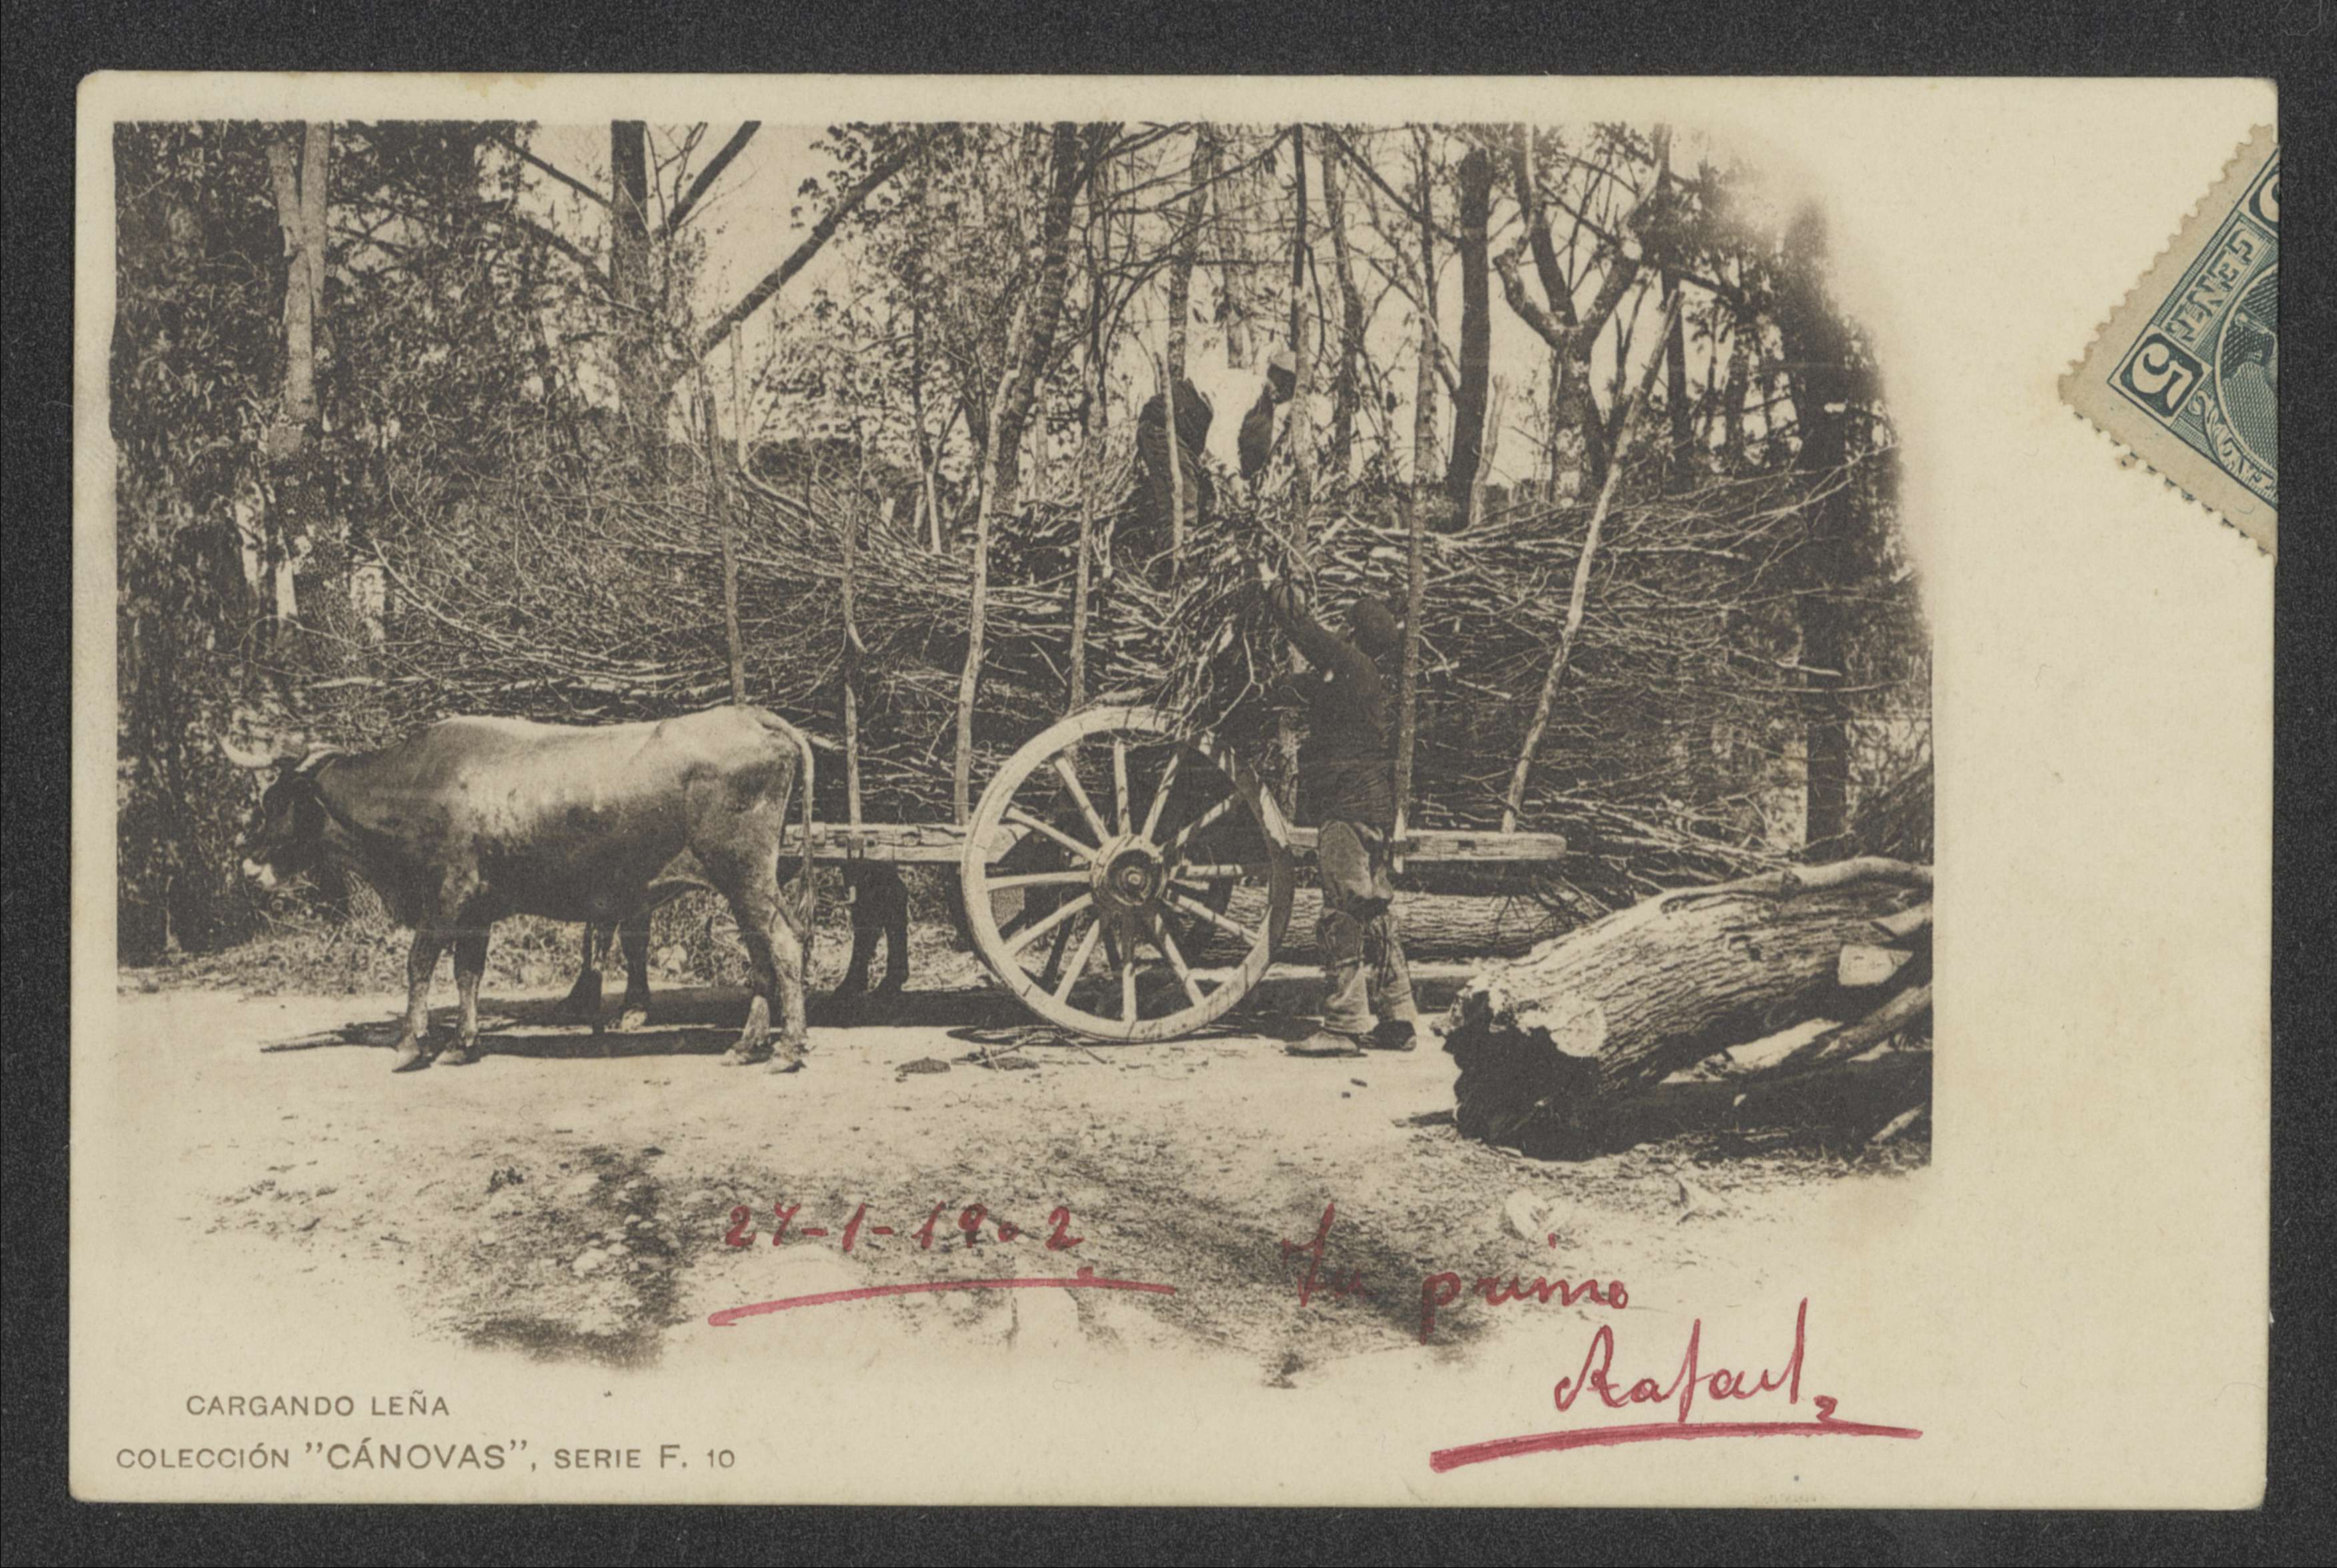 Cargando leña, ca. 1902